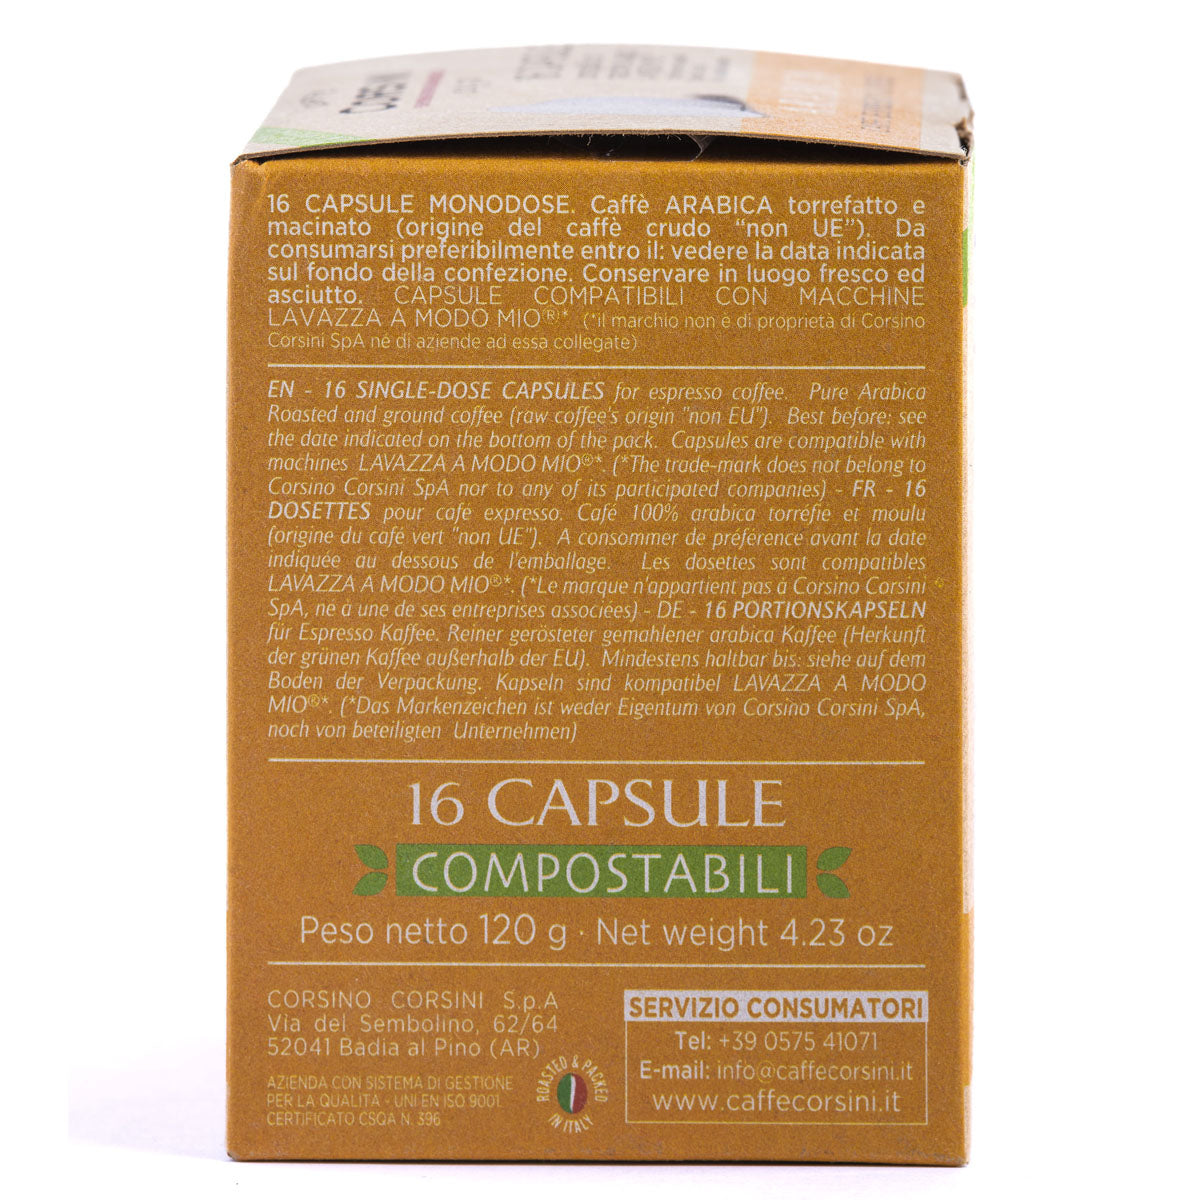 16 compostable Lavazza®* A Modo Mio®* compatible coffee capsules per pack | Gran Riserva Arabica | Box of 12